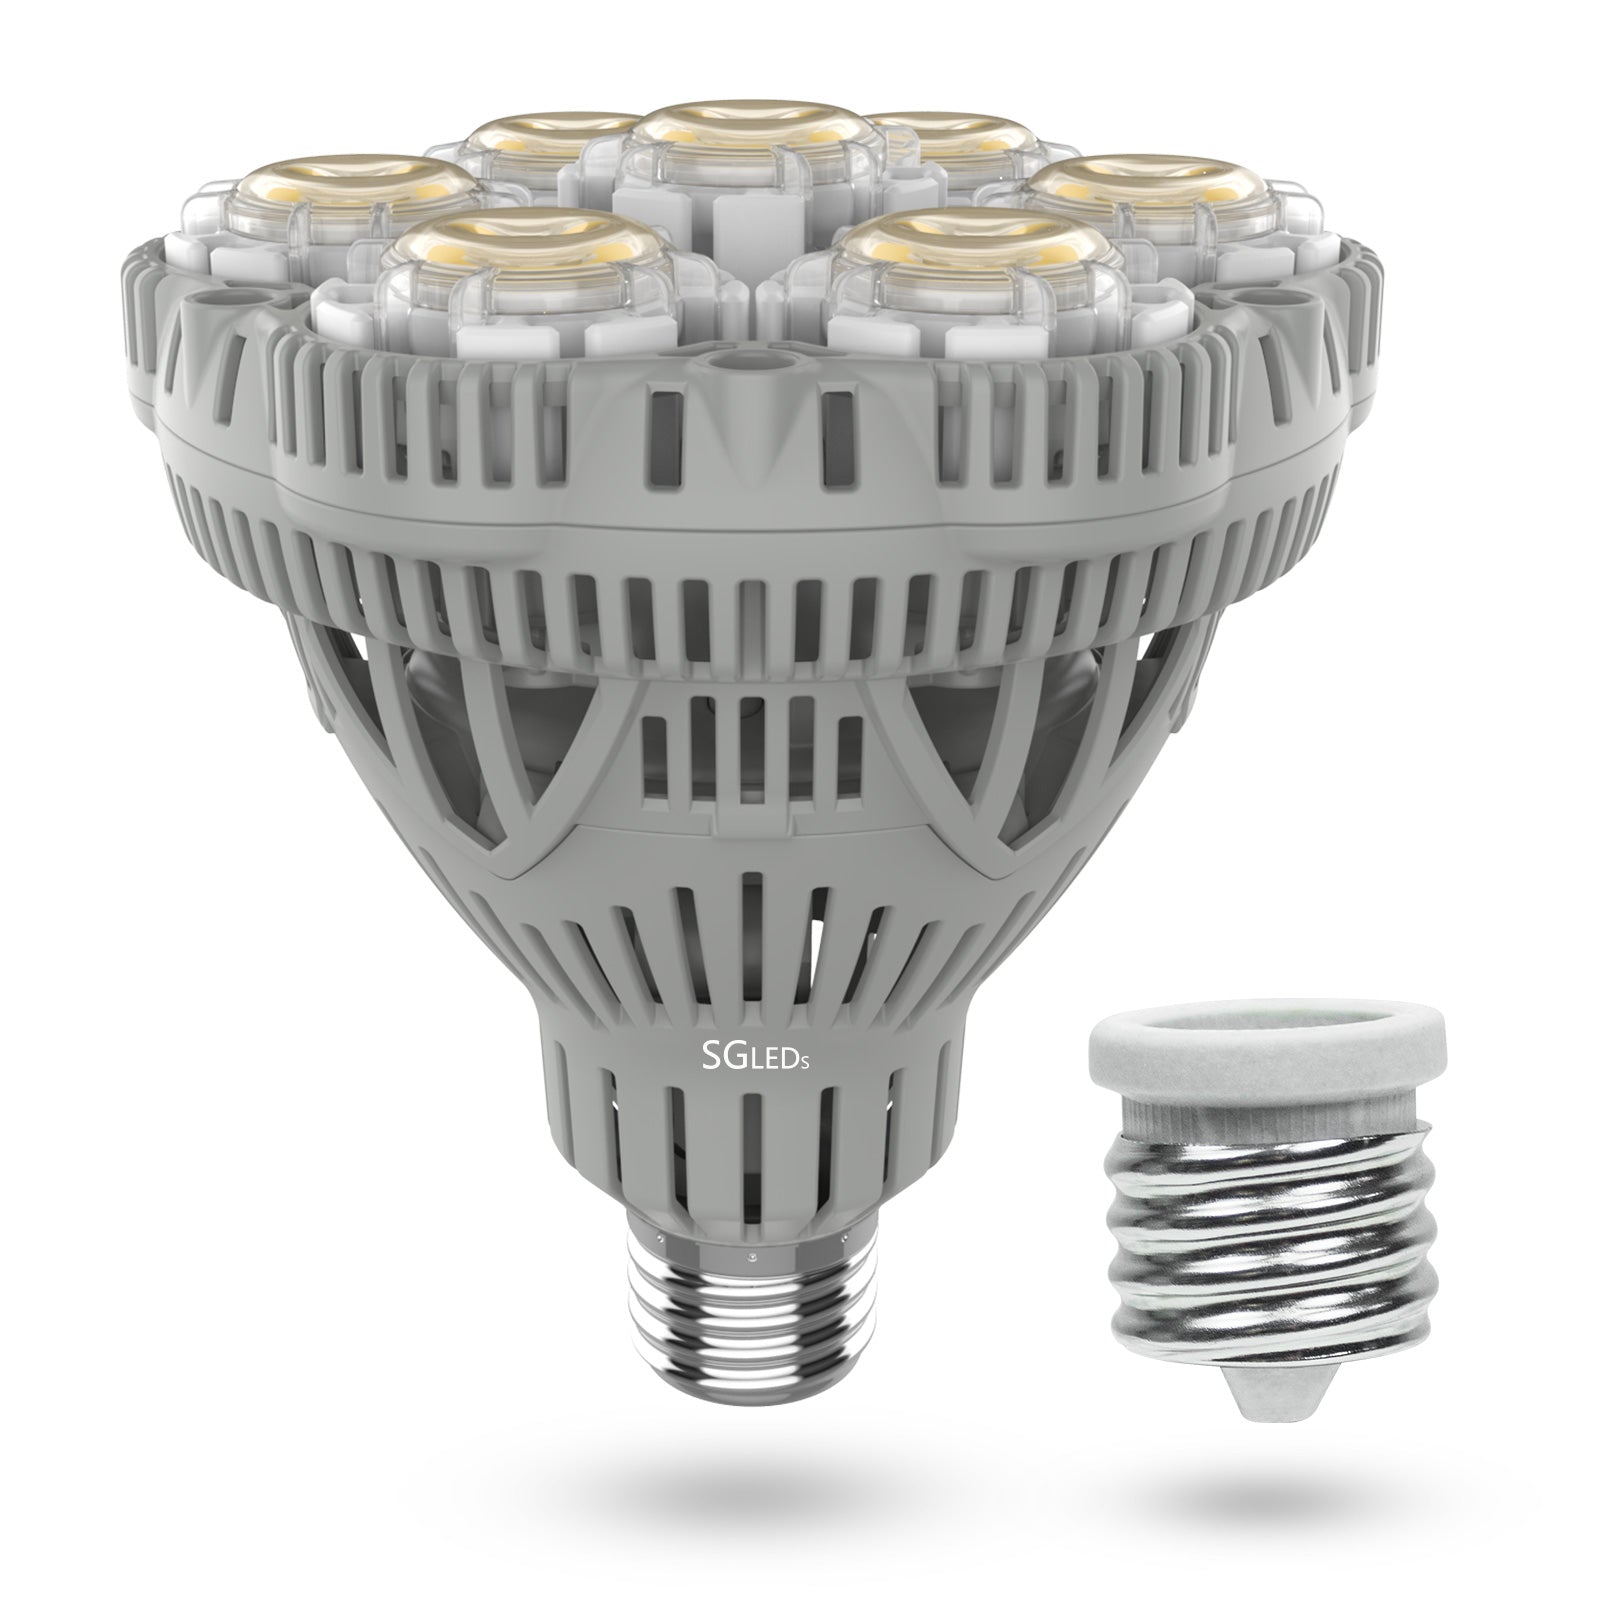 SG BR30 40W Warehouse Led Light Bulb